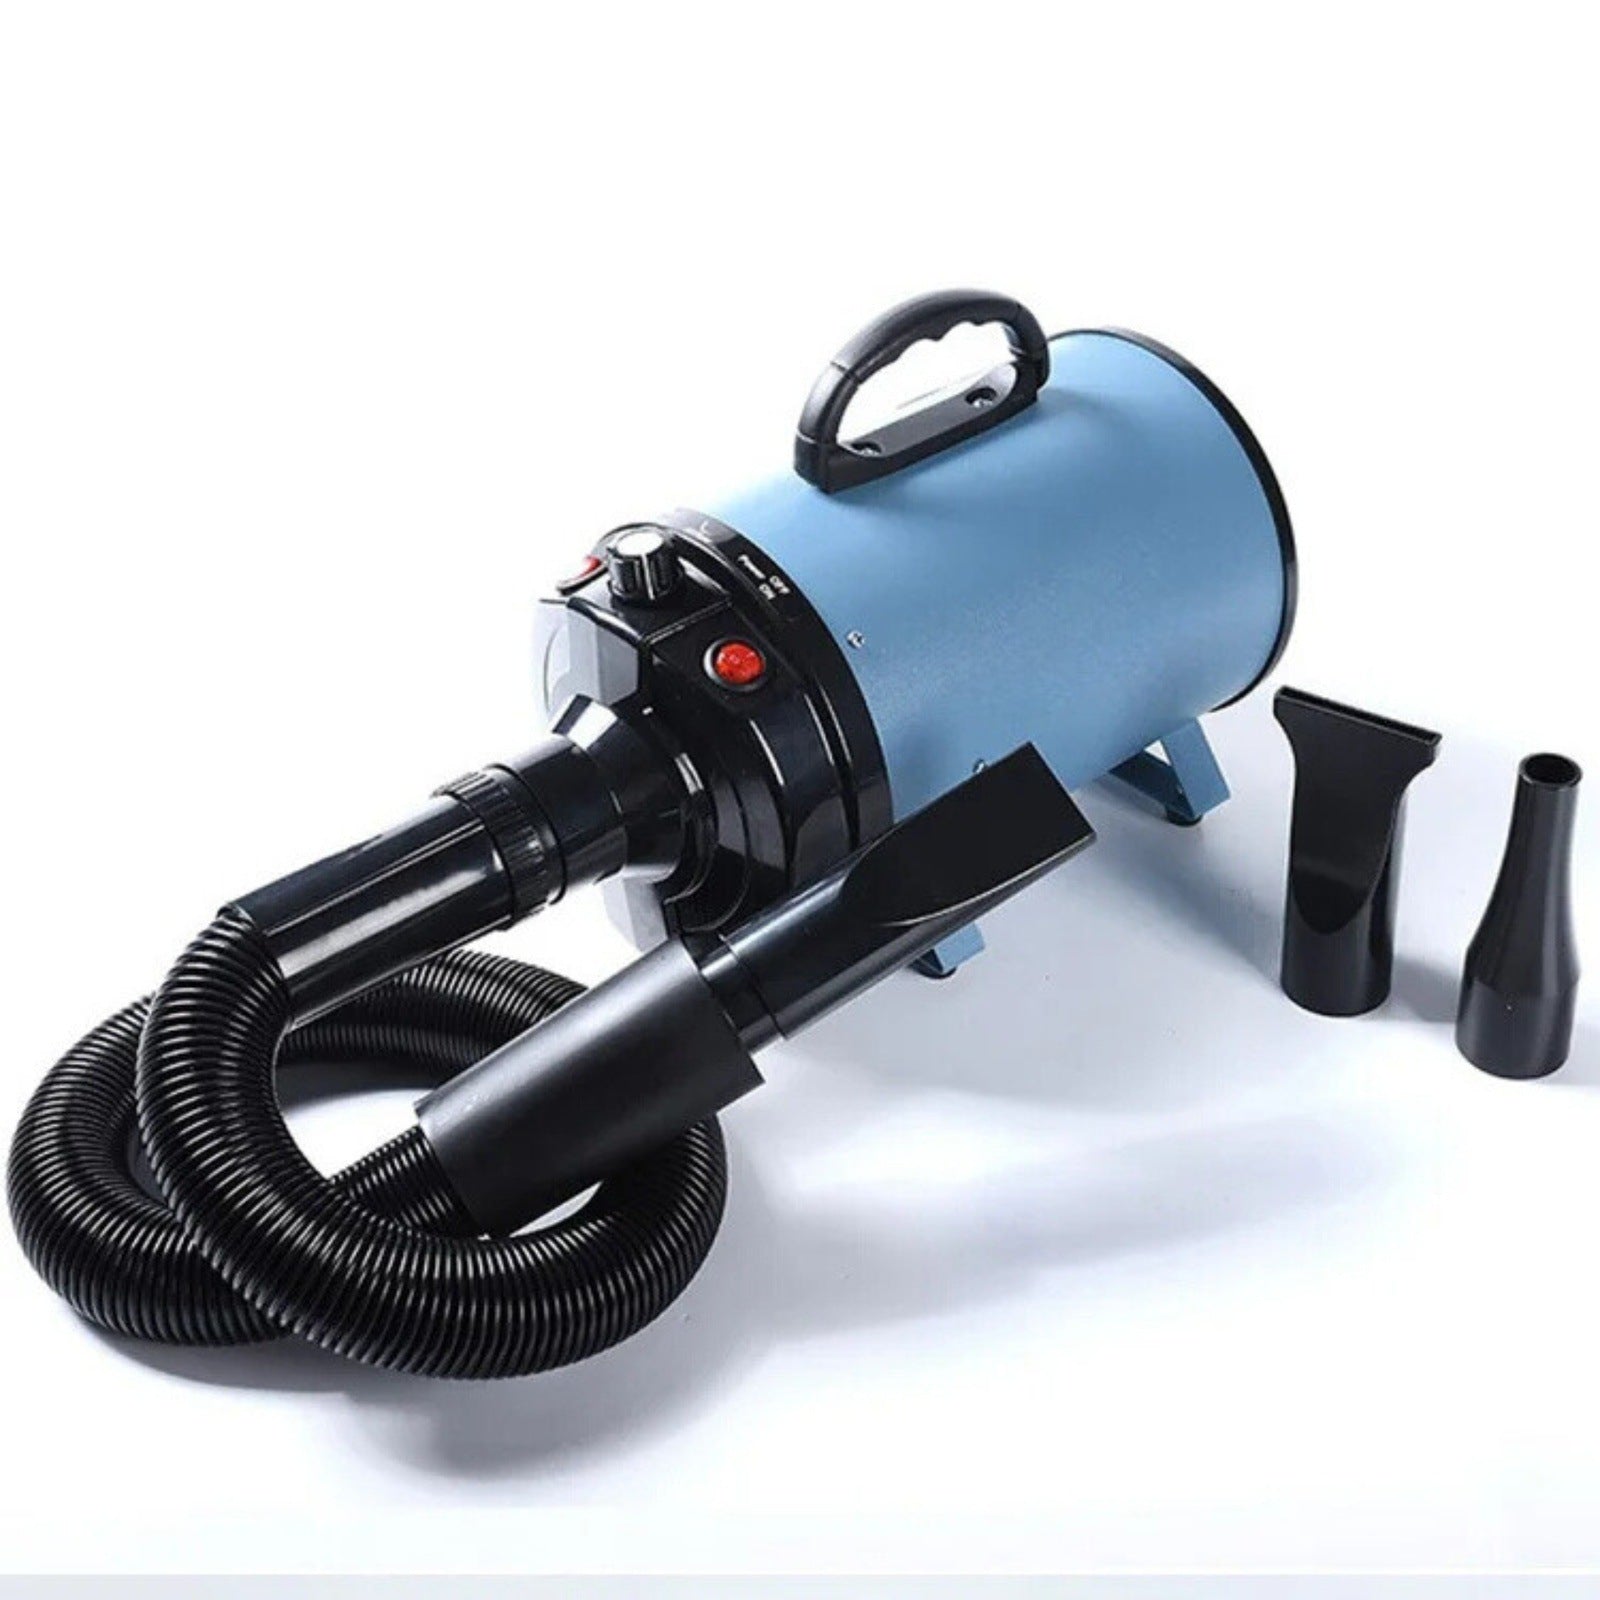 Waterblazer - Herculean - Waterblazer voor honden - Professionele waterblazer - 2800 watt - Professionele hondenföhn - Hondenföhn - Dogzoo